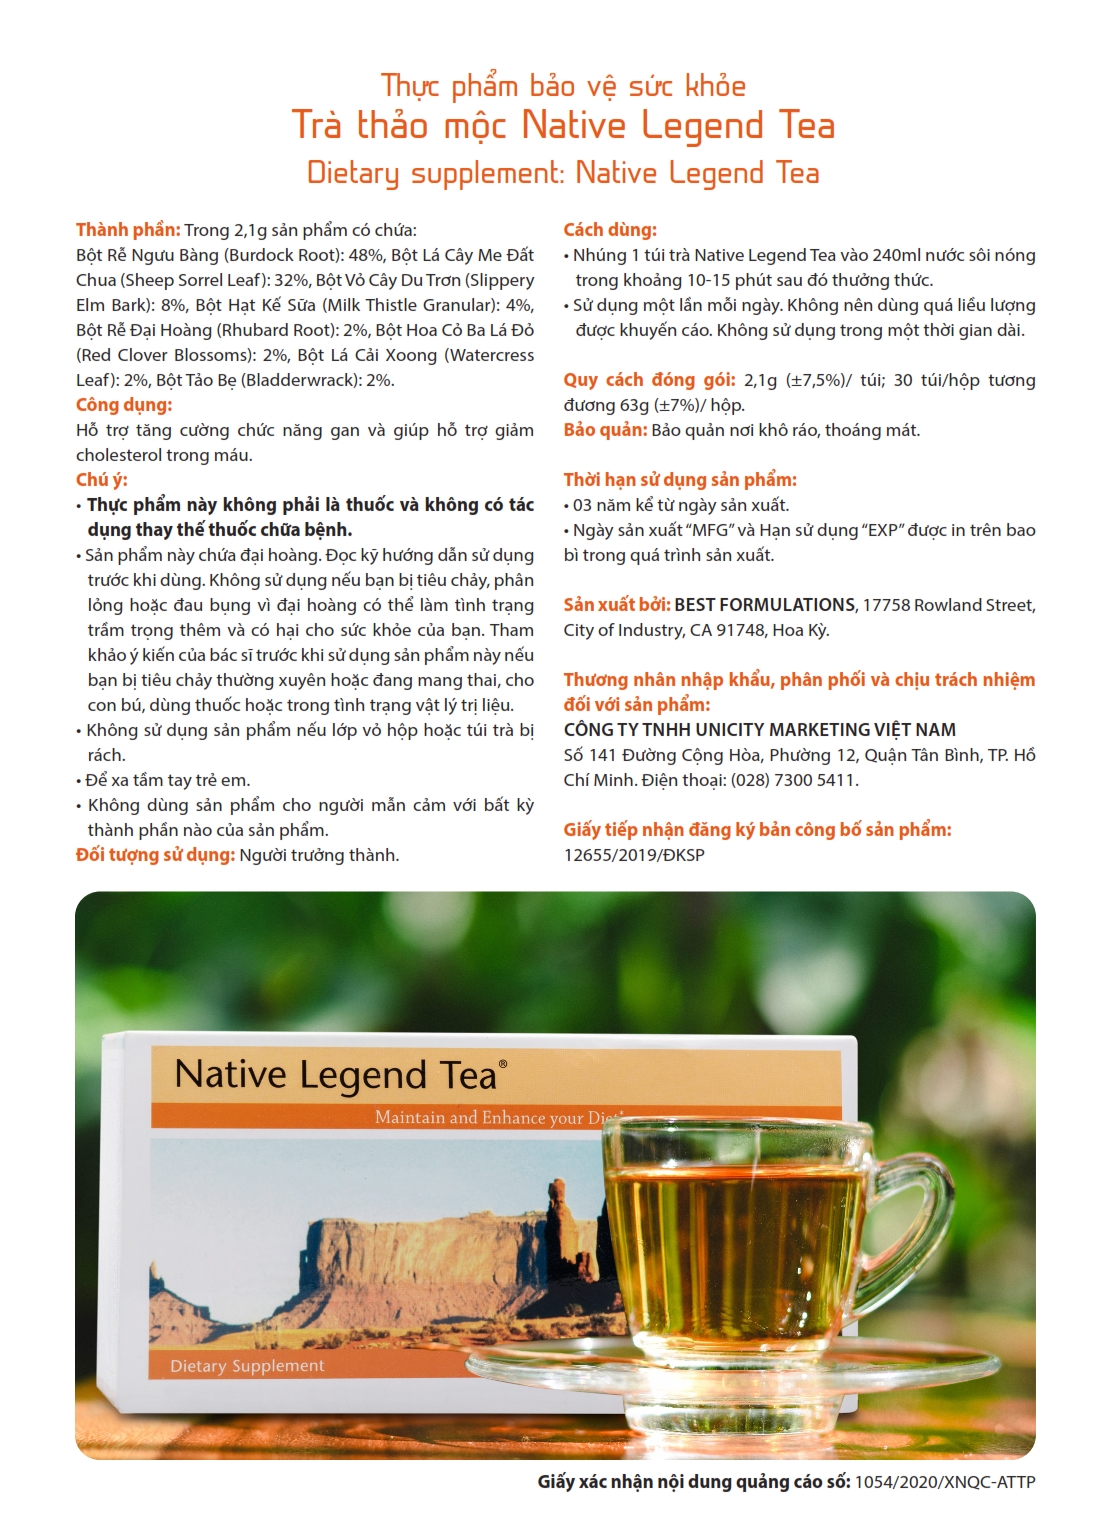 thành phần chi tiết Tra-thao-moc-NativeLegend-Tea-Unicity